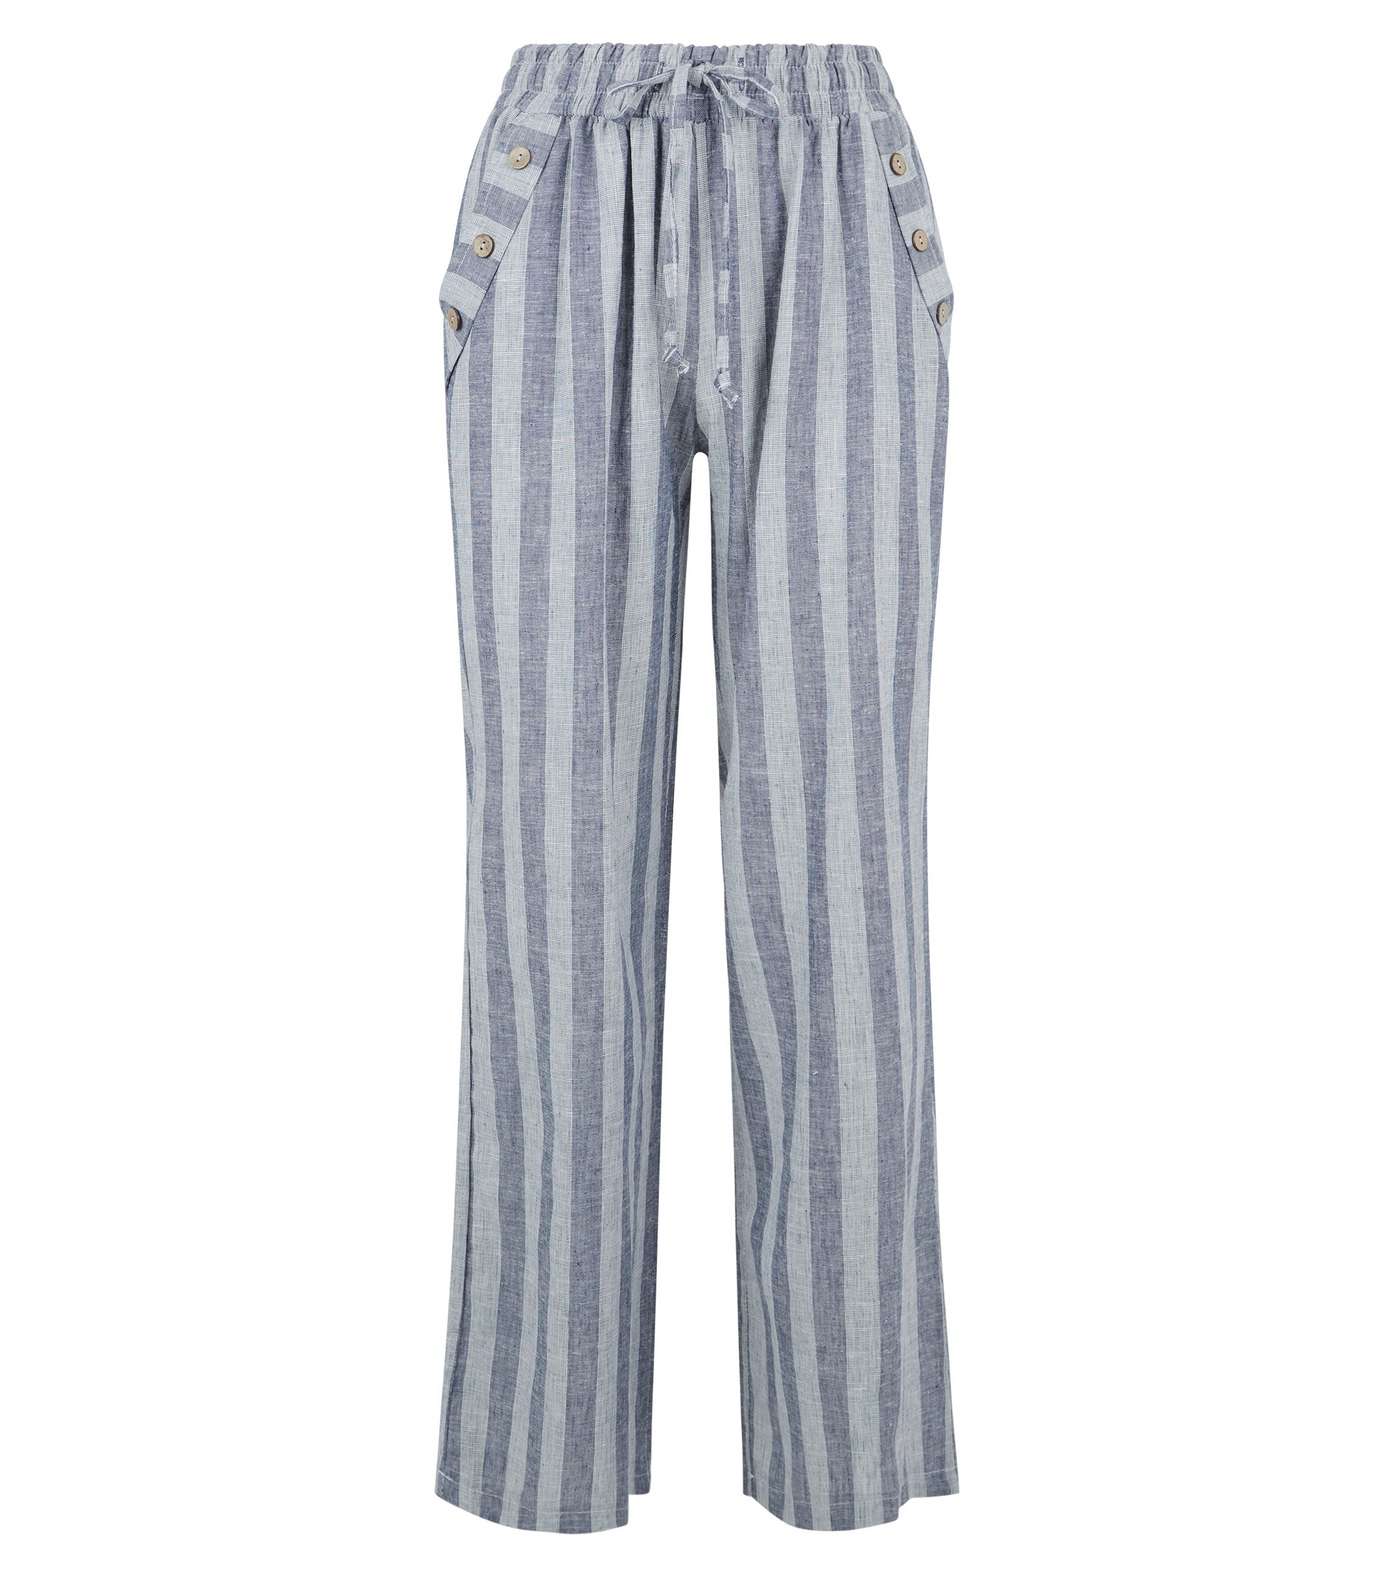 Lulua London Blue Stripe Linen-Look Trousers  Image 4